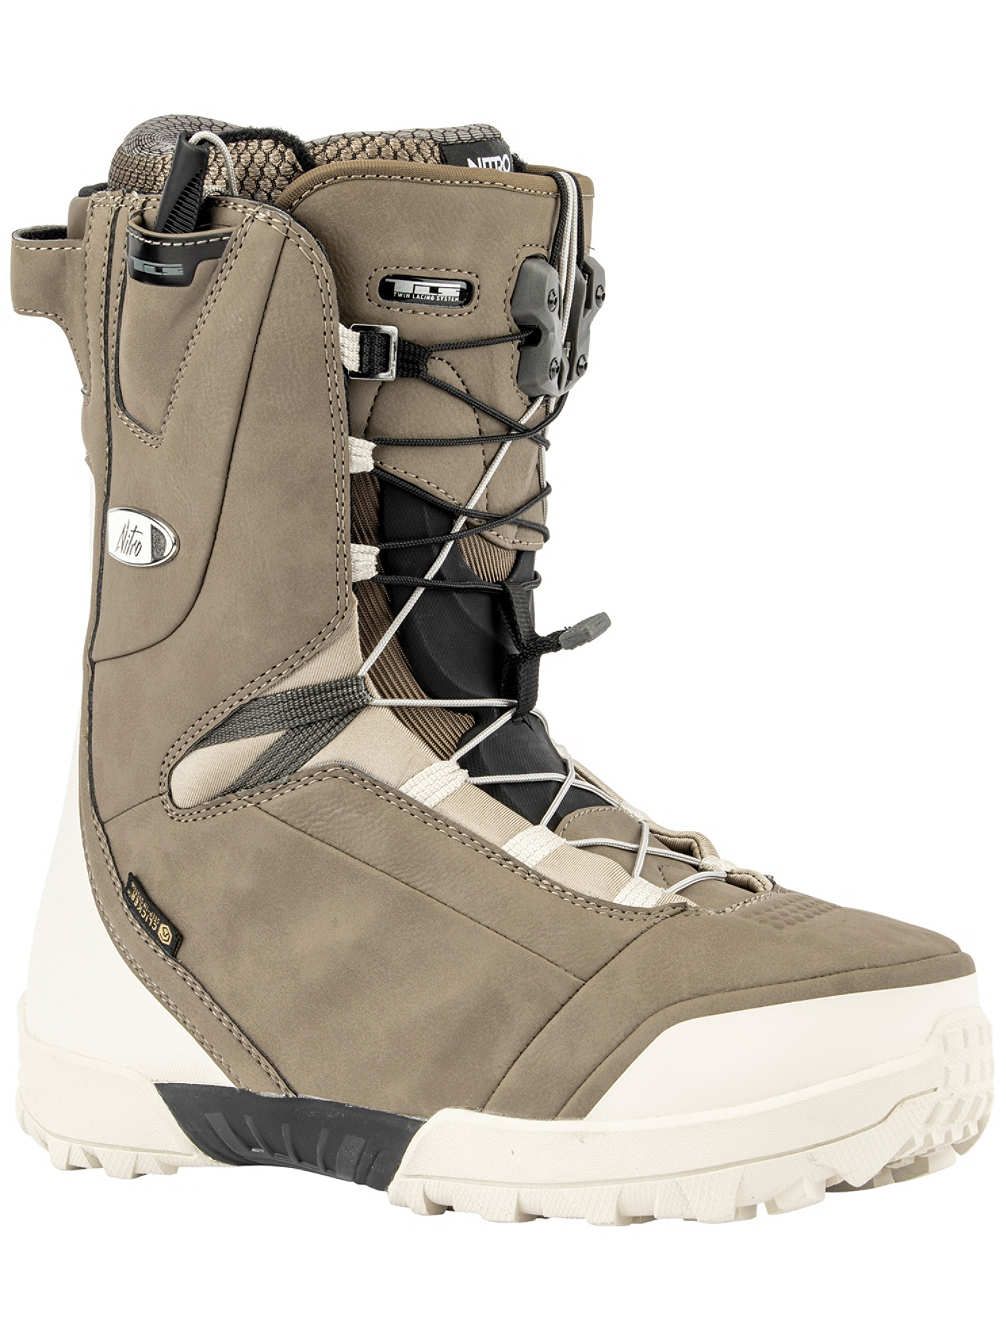 Boots de snow femme Lave Clicker Sand-White de Nitro 2020